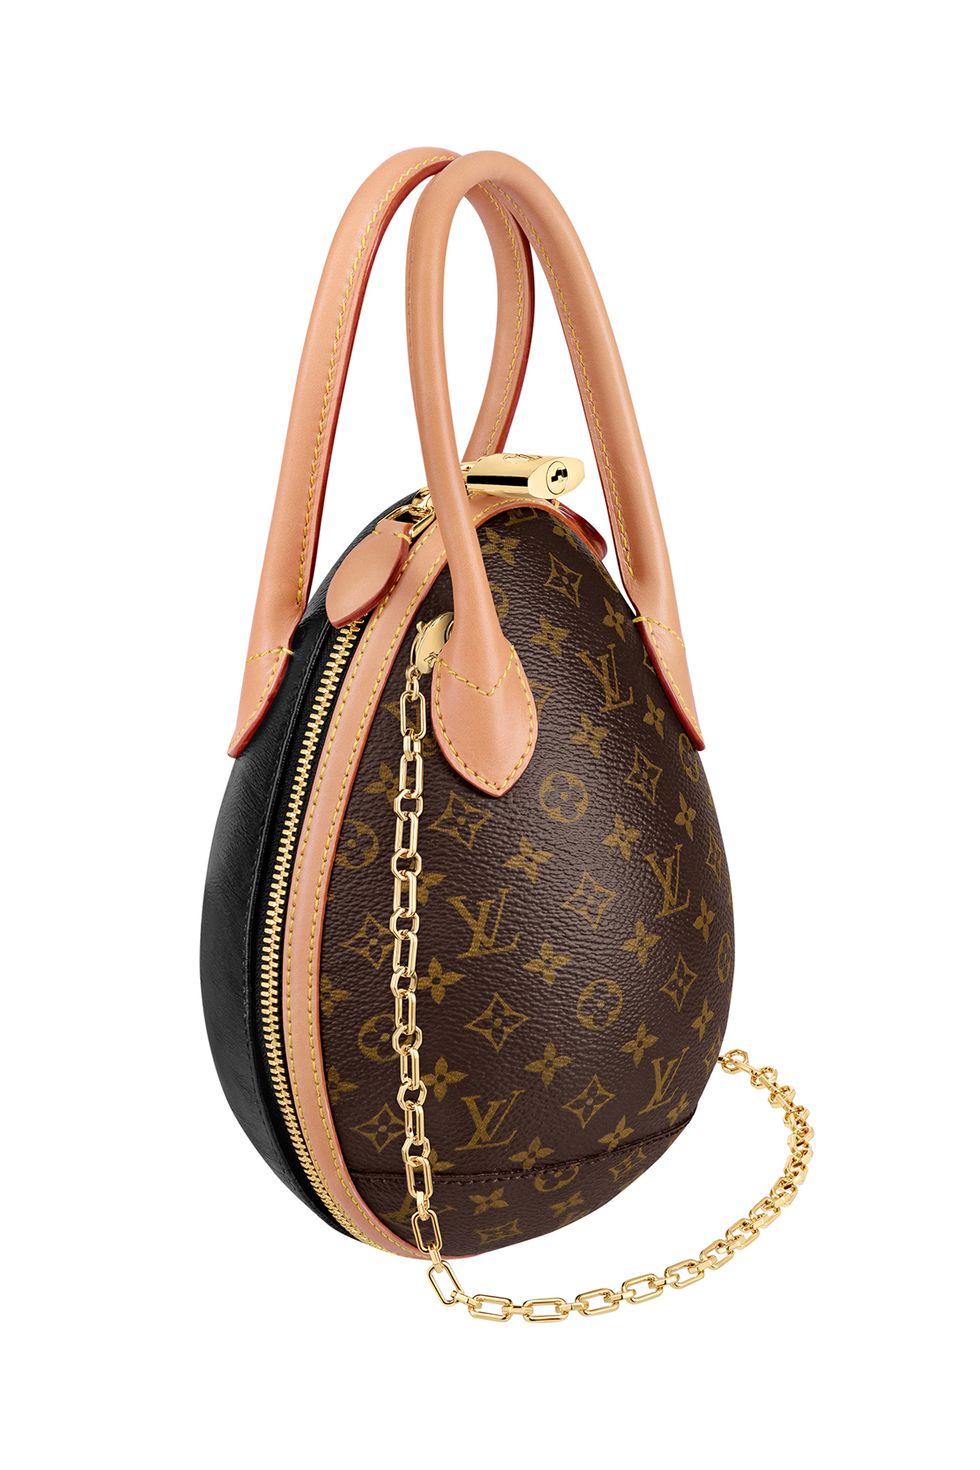 Bag, Handbag, Brown, Fashion accessory, Shoulder bag, Hobo bag, Beige, 